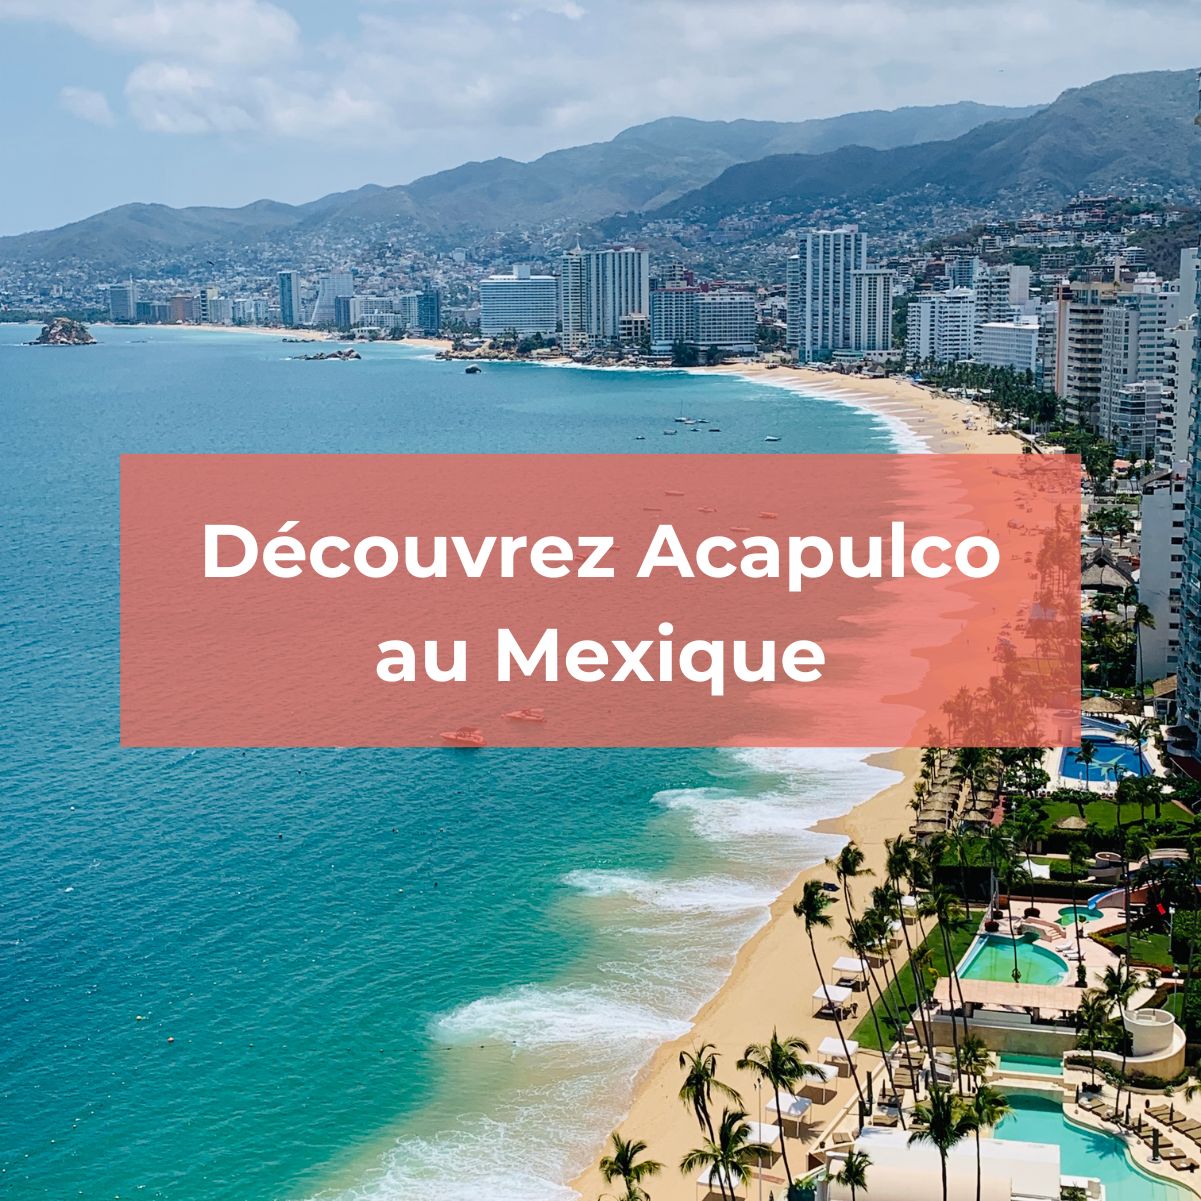 Découvrez la station balnéaire d'Acapulco